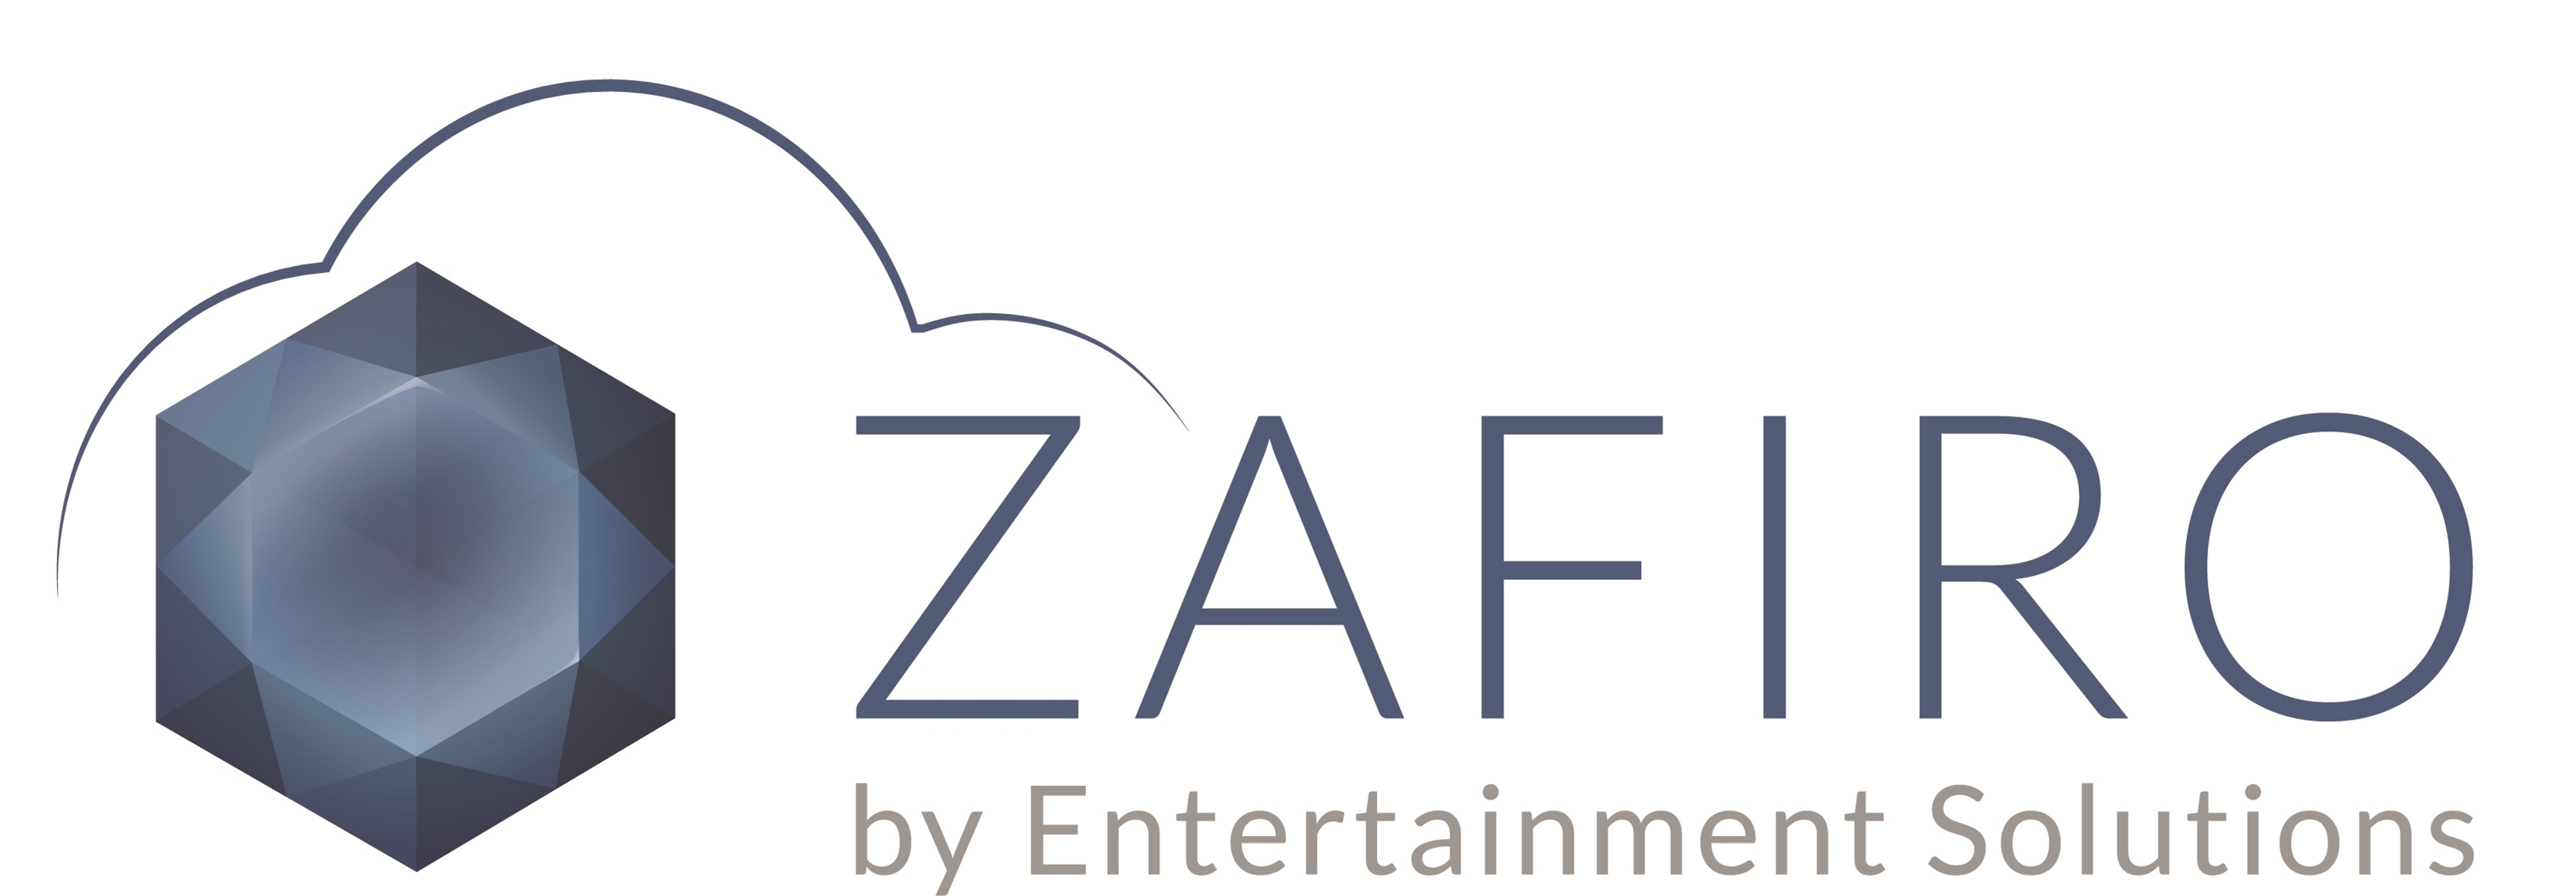 Zafiro logo